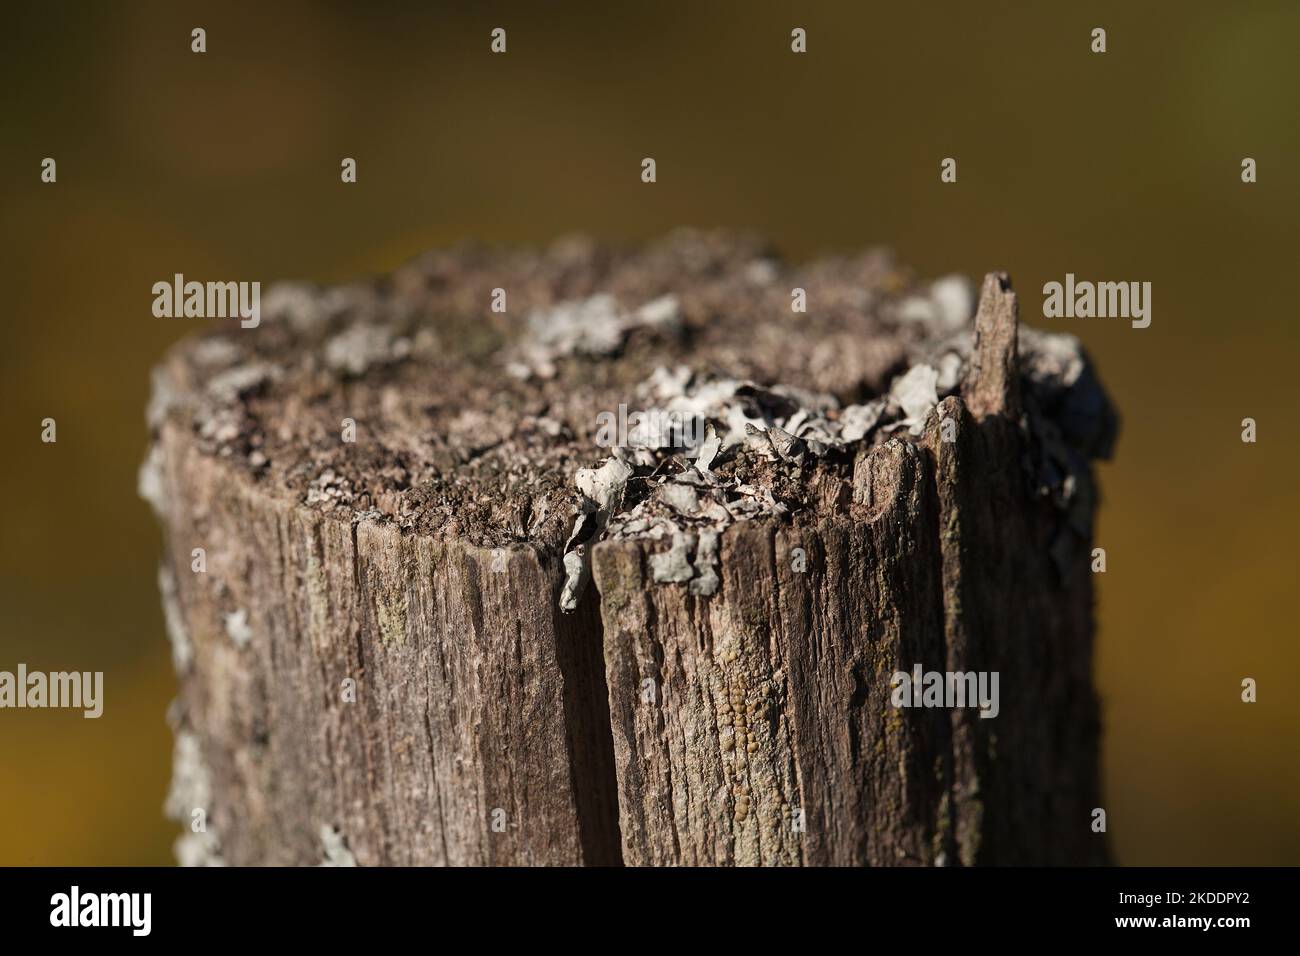 Foliosio licheni in cima a un picket recinto. I licheni germogliano su un picket di legno contro uno sfondo sfocato. Foto Stock